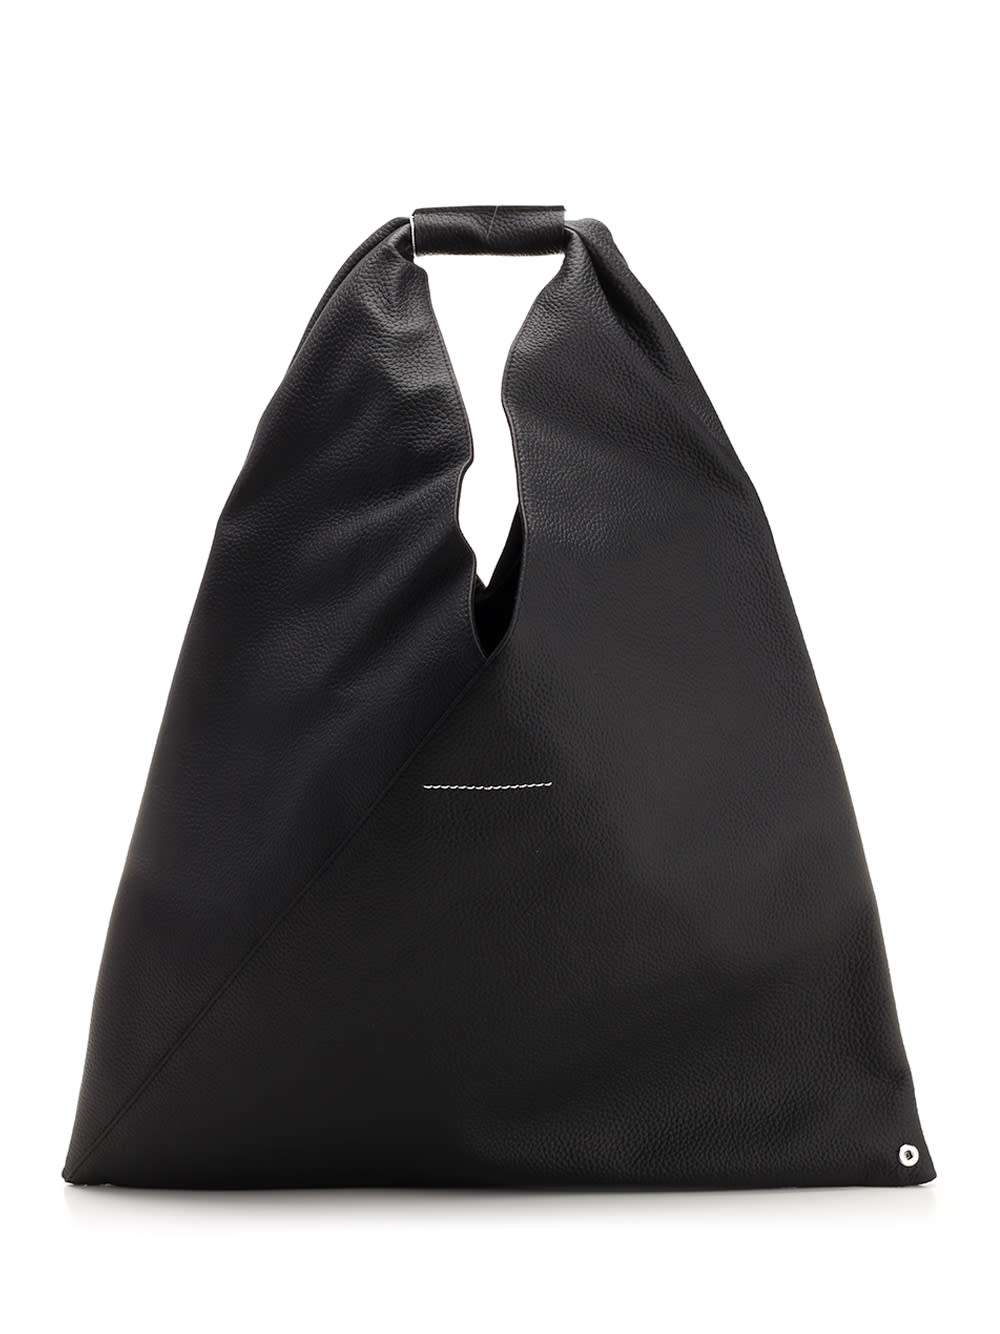 MM6 Maison Margiela Padded Bomber Style Japanese Bag | Smart Closet